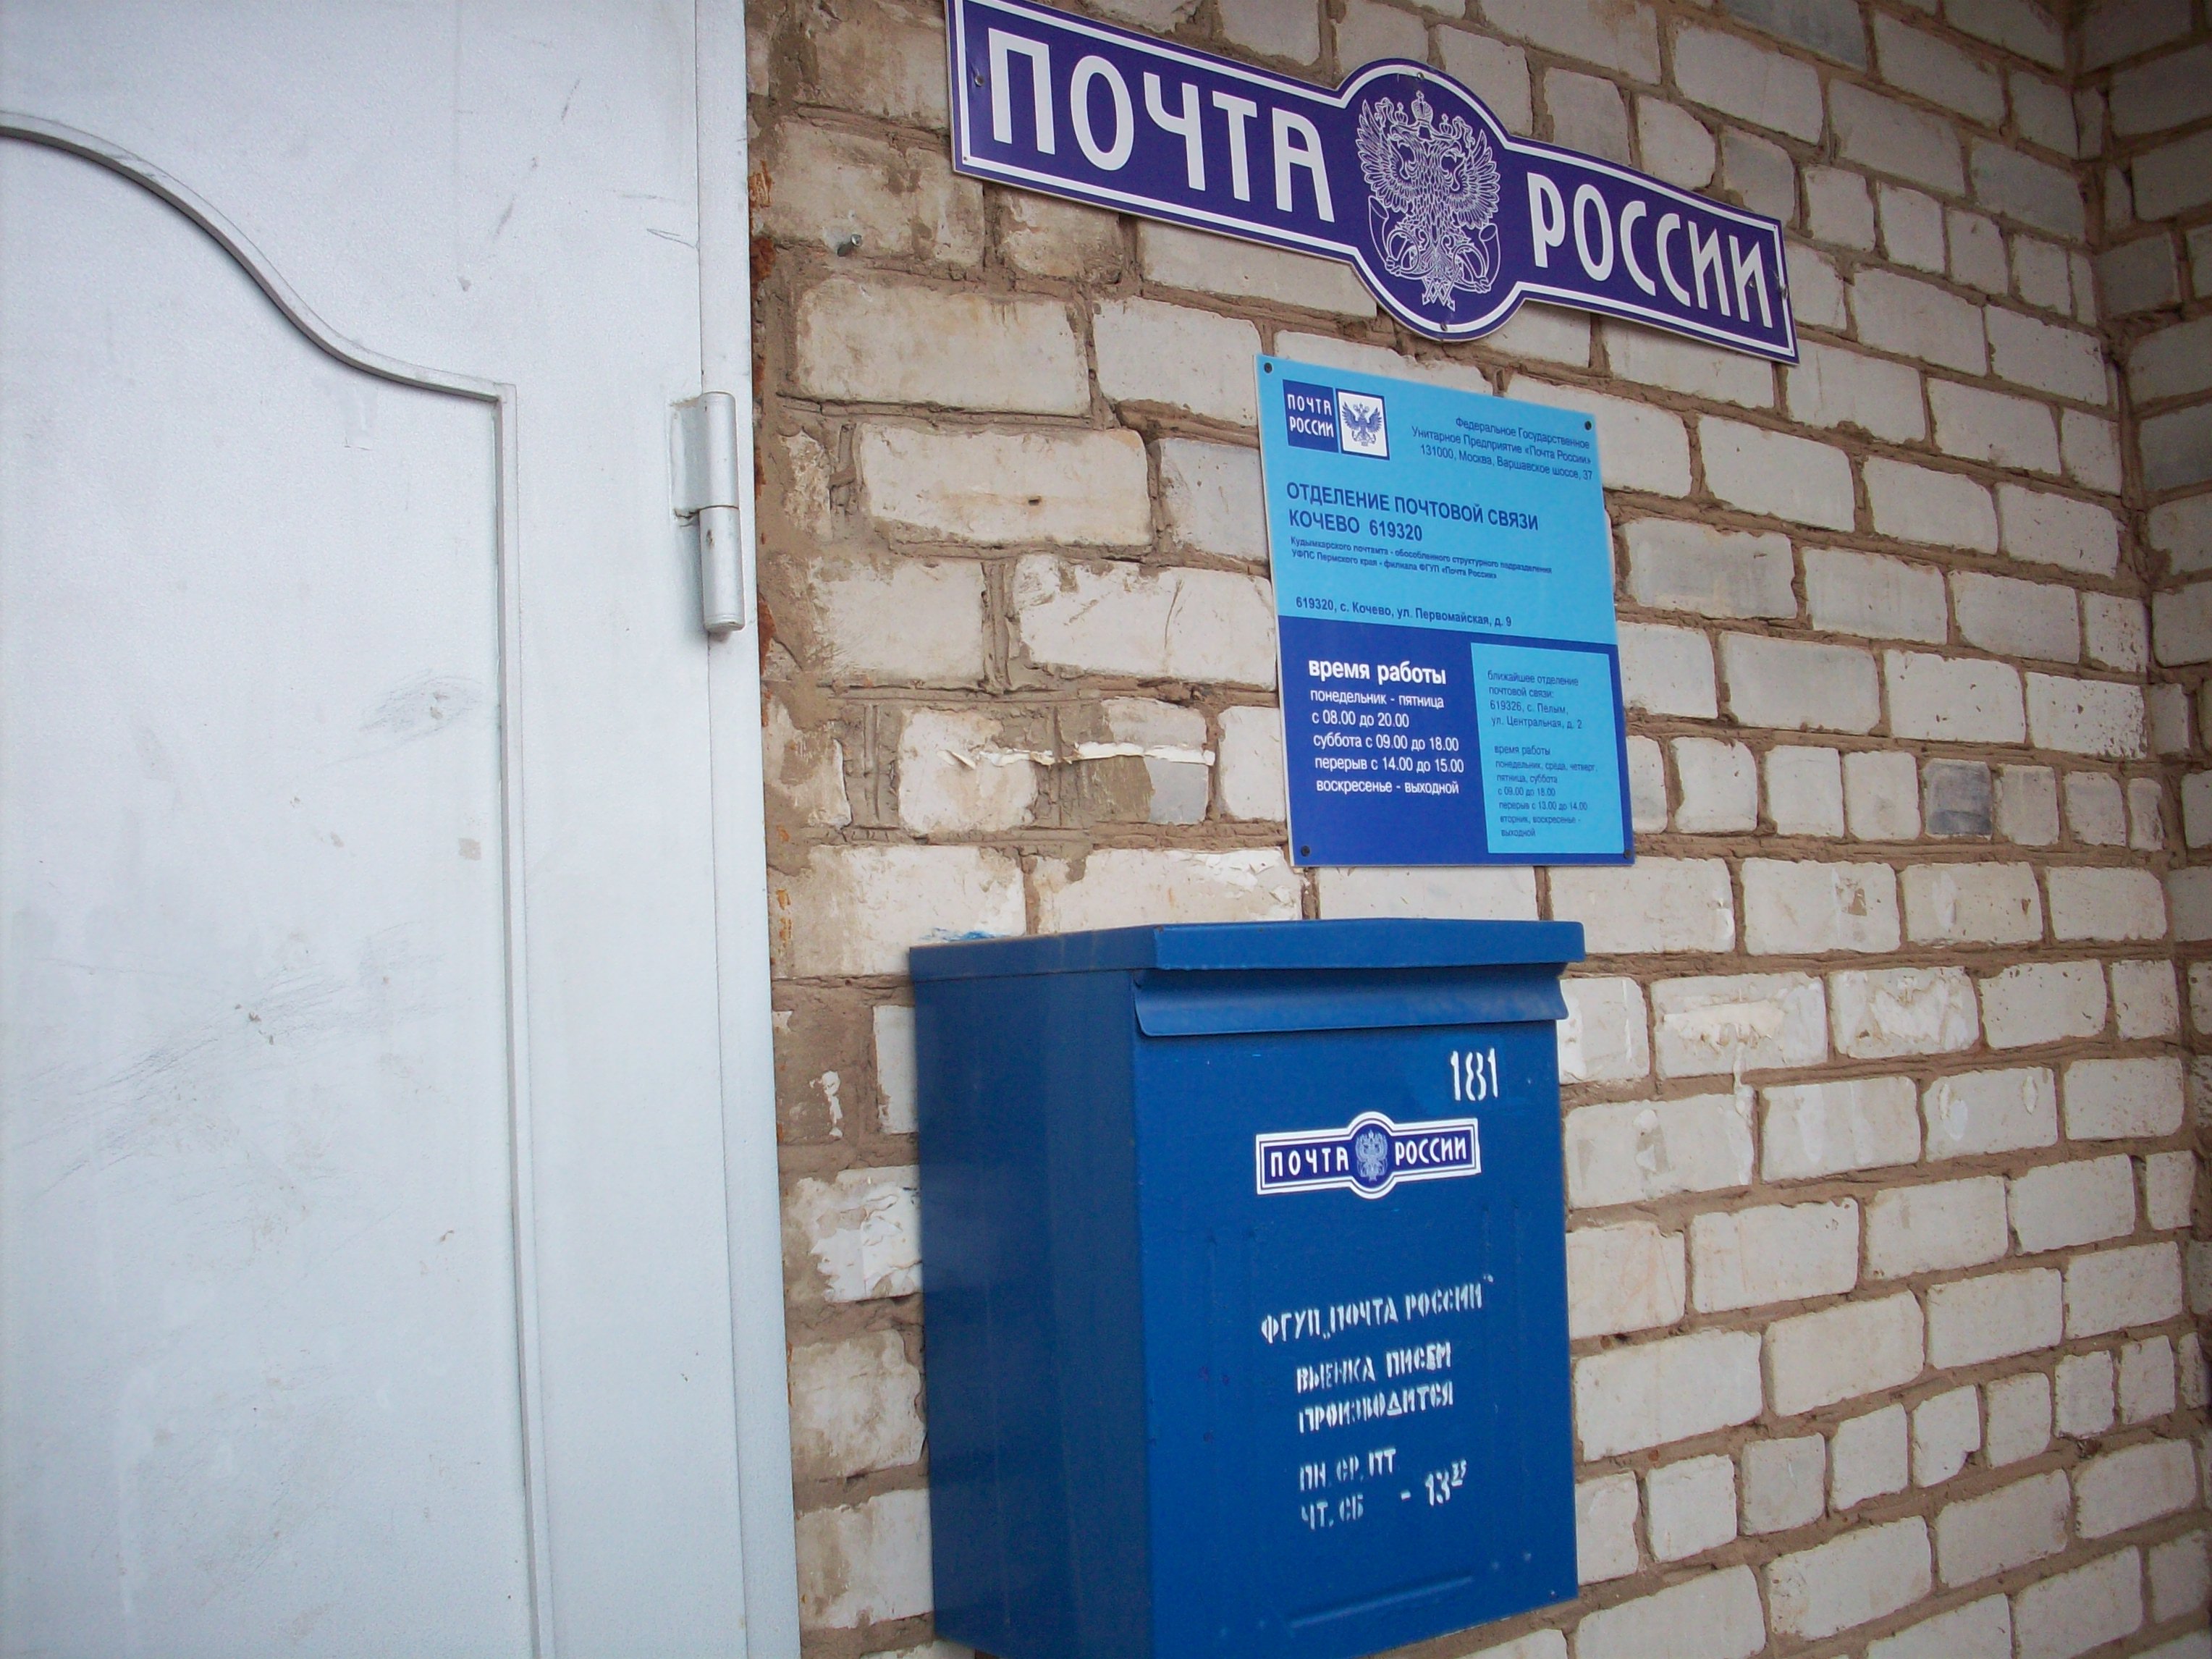 ВХОД, отделение почтовой связи 619320, Пермский край, Коми-Пермяцкий окр.